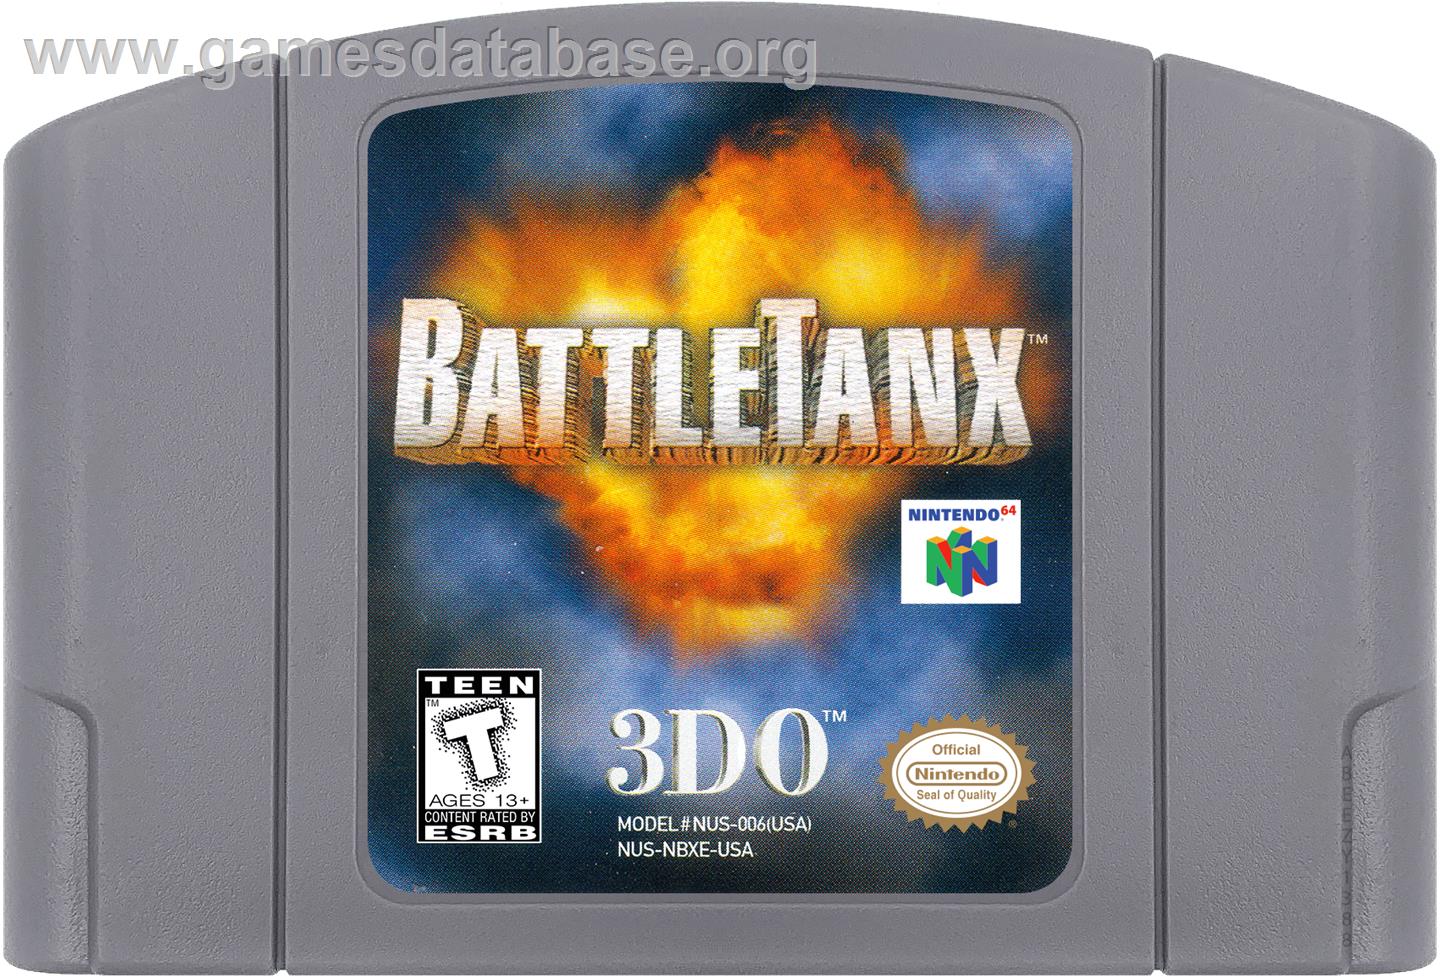 BattleTanx: Global Assault - Nintendo N64 - Artwork - Cartridge